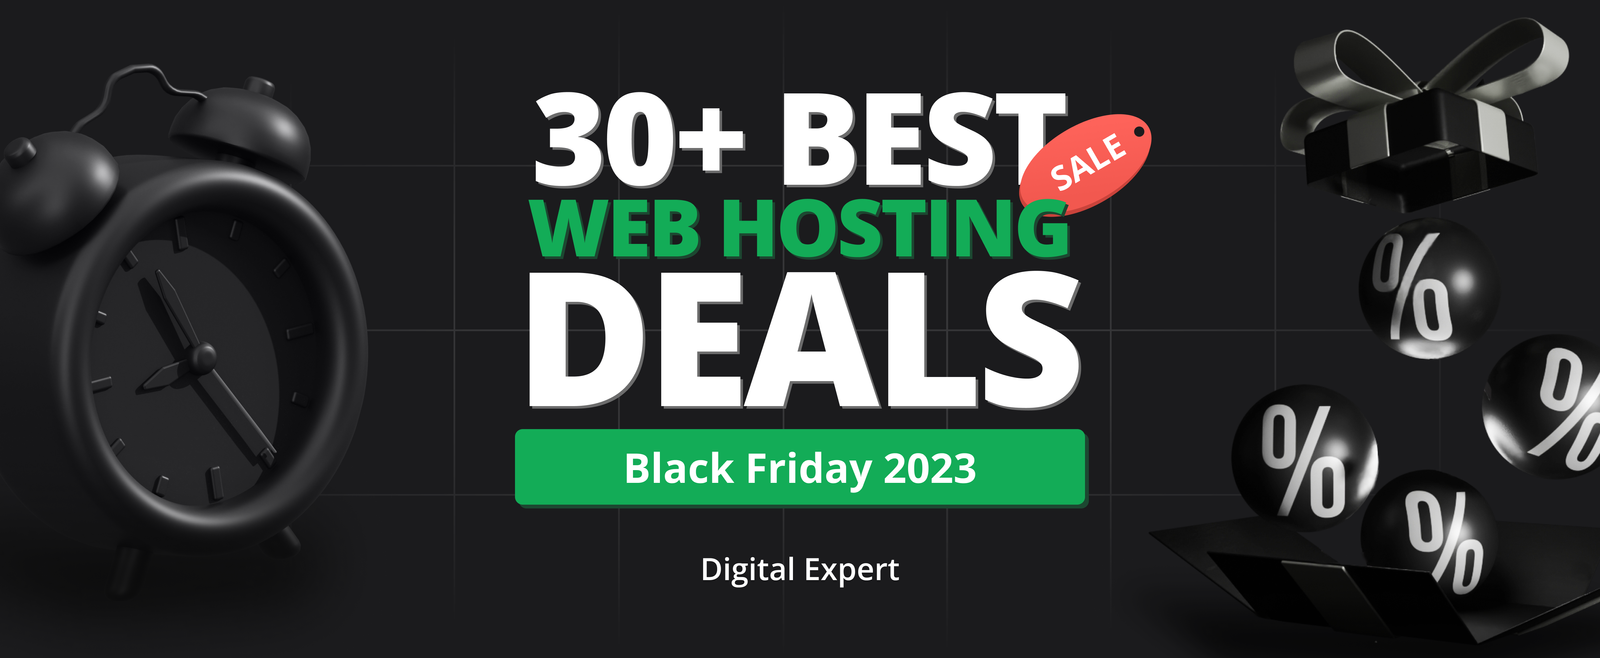 30+ Best Black Friday Web Hosting Deals 2023